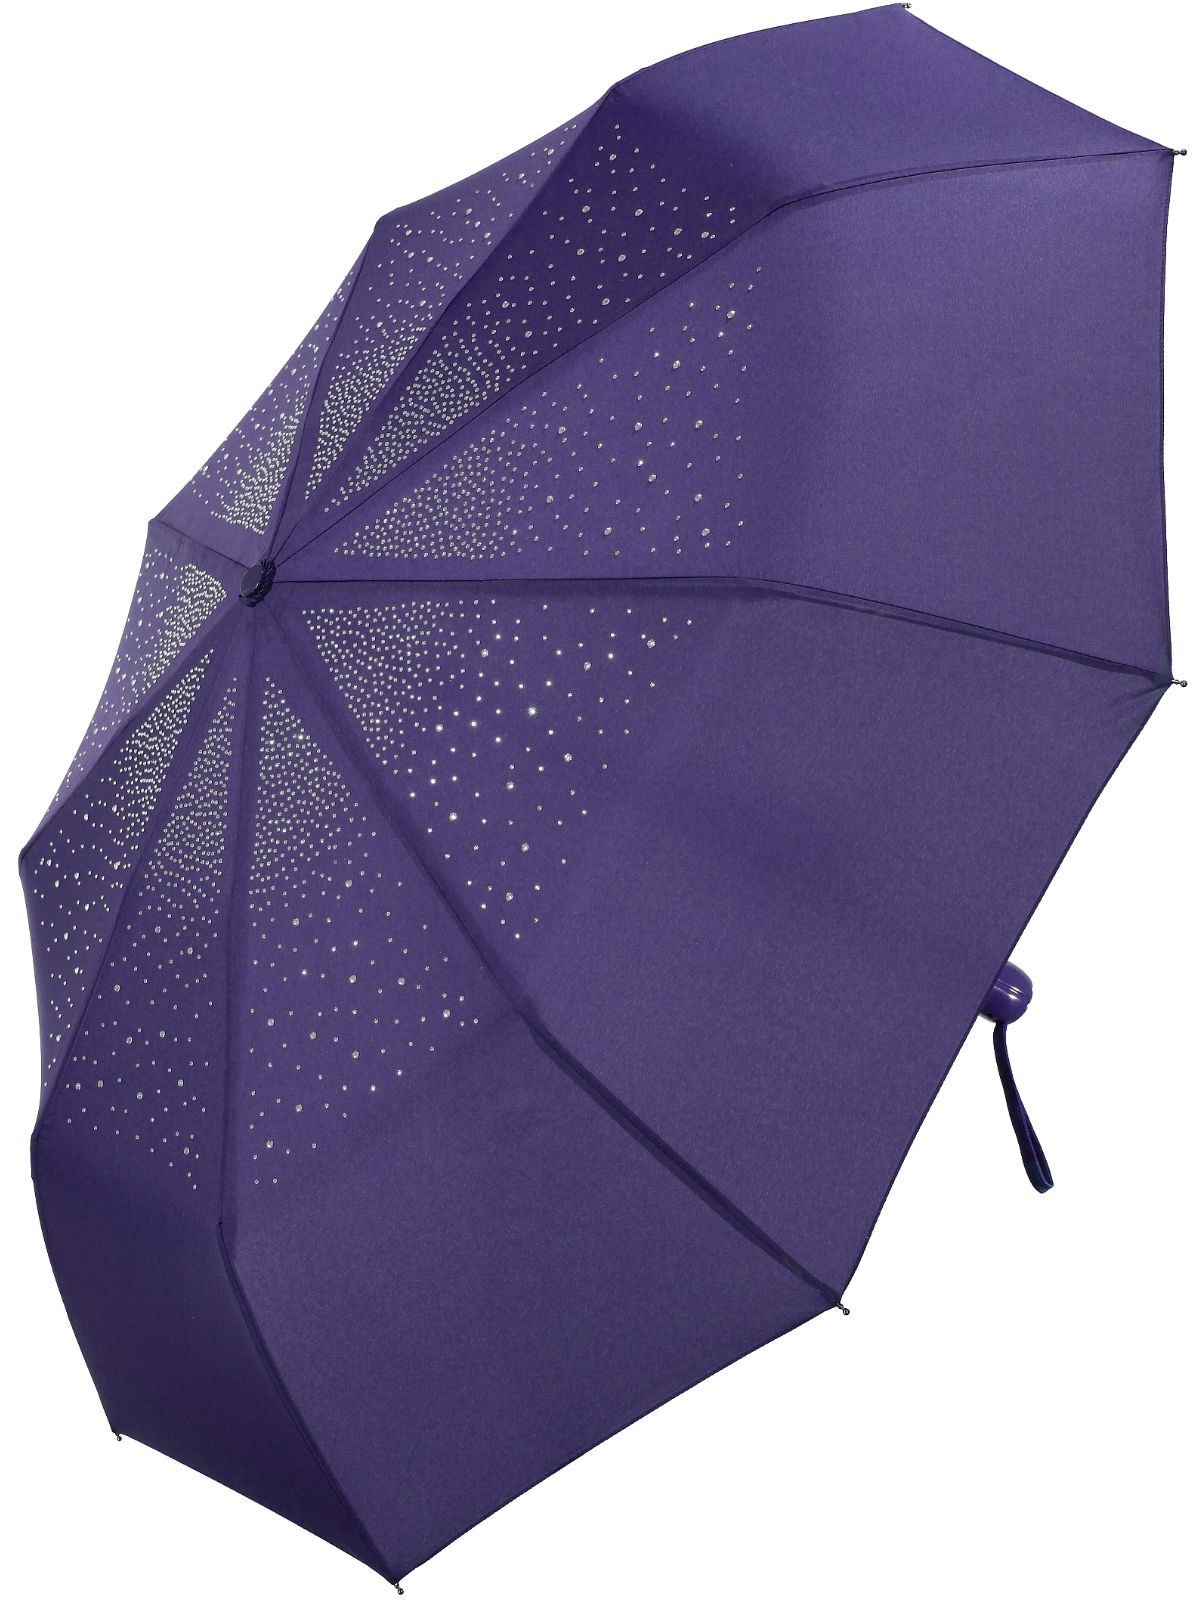 Вайлдберриз зонты женские. Зонт Universal a648. Зонт Universal a0074-5. Isotoner зонт женский 09496. Зонты женские на валберис.